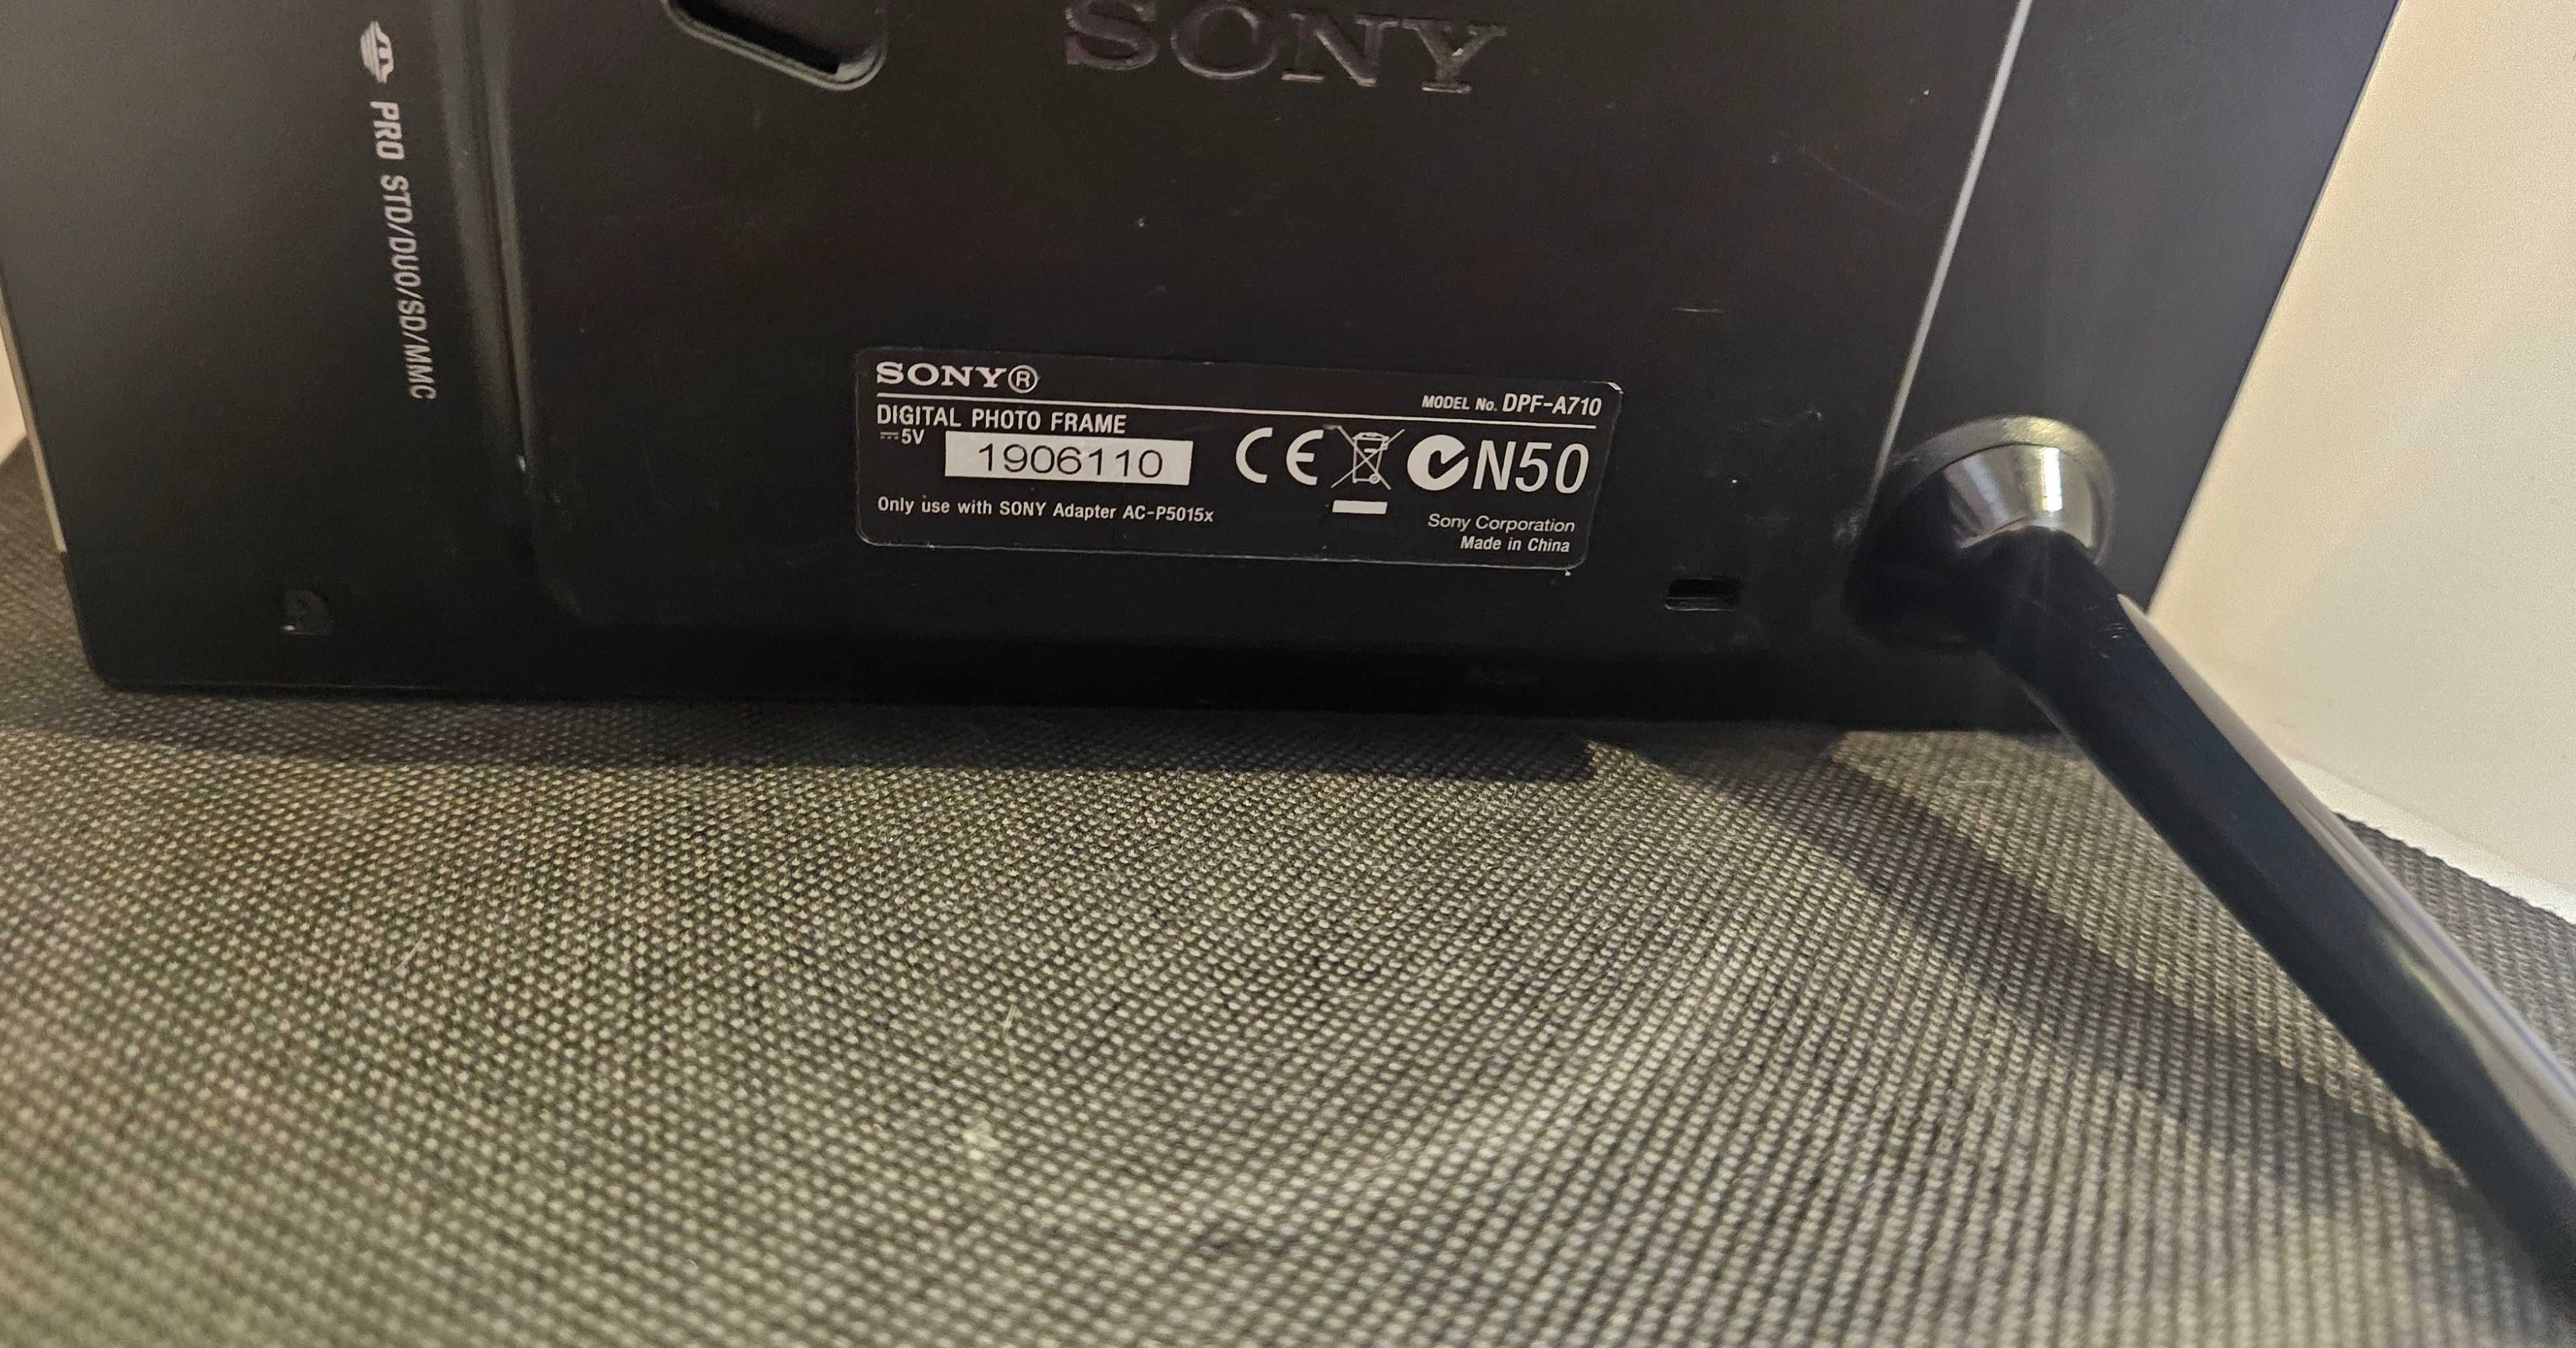 594/24 Elektroniczna ramka na zdjęcia Sony DPF-A710